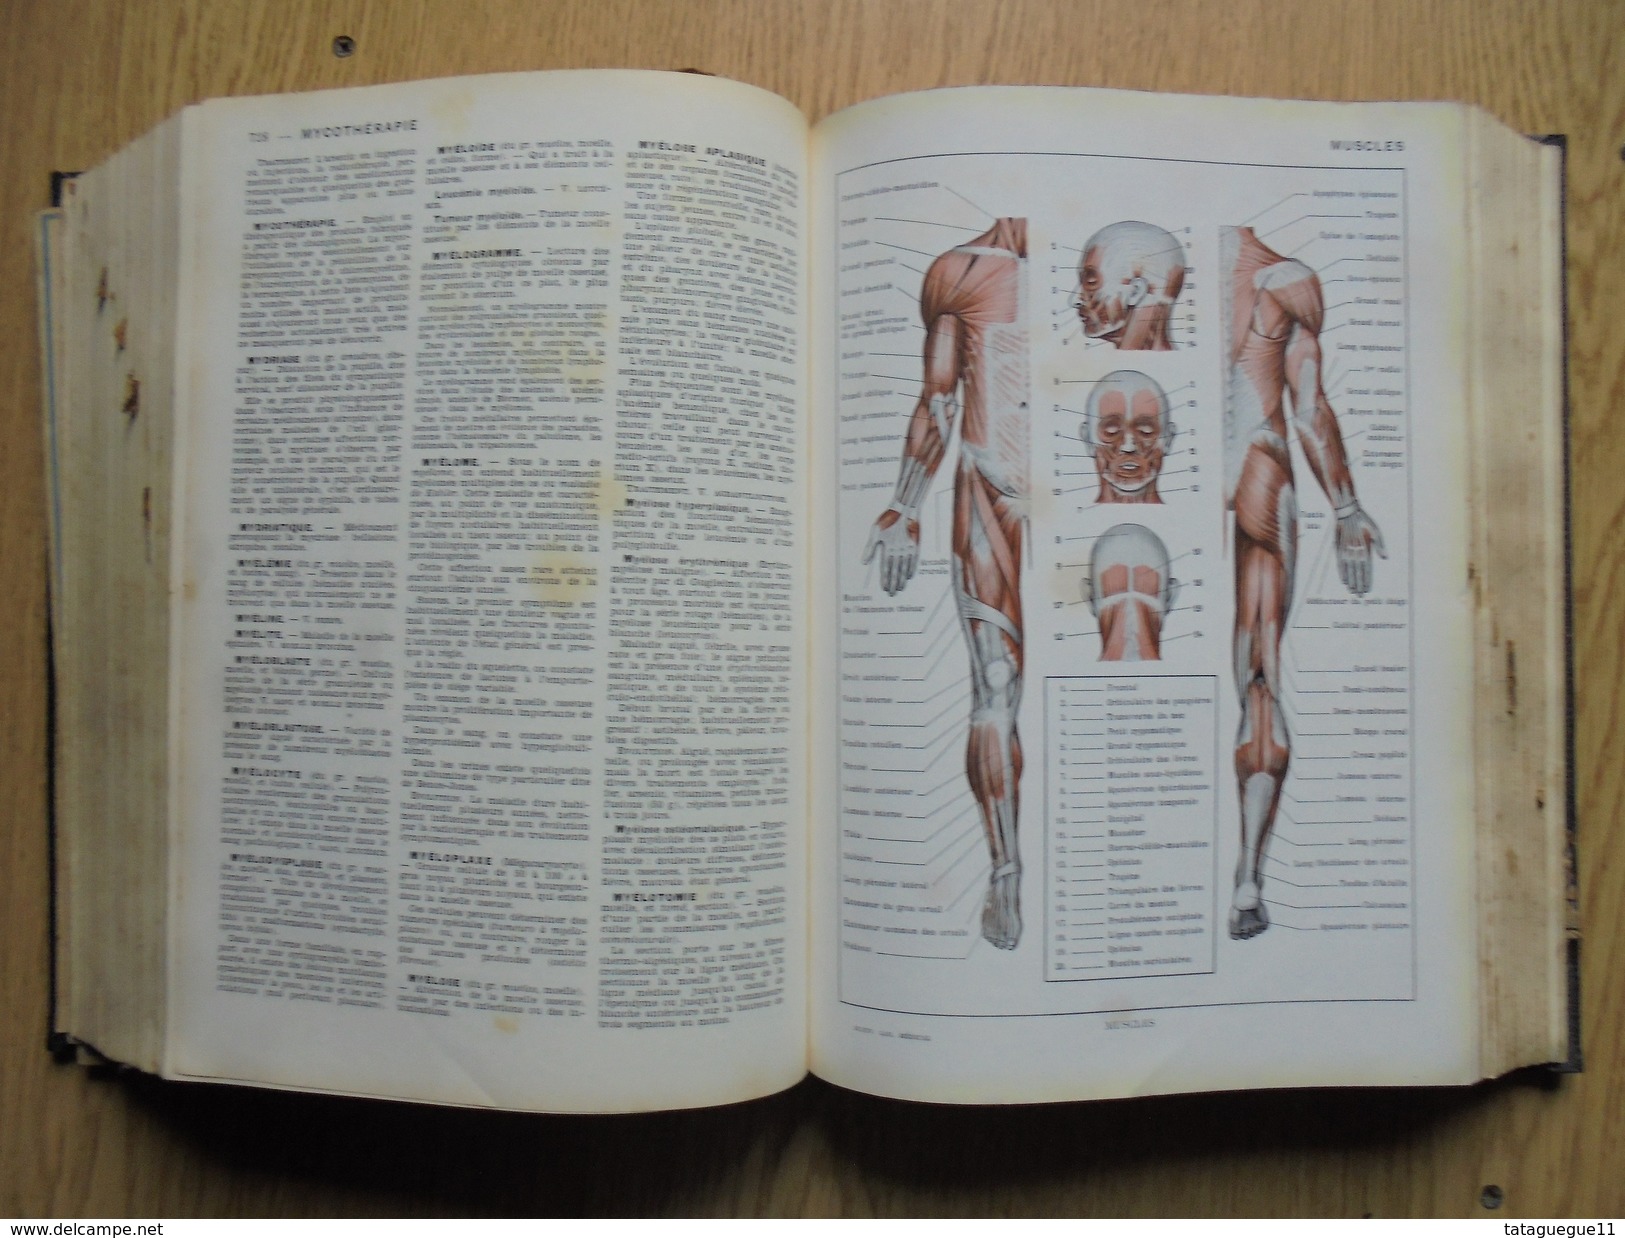 Ancien - Dictionnaire NOUVEAU LAROUSSE MEDICAL 1952 - Dictionnaires